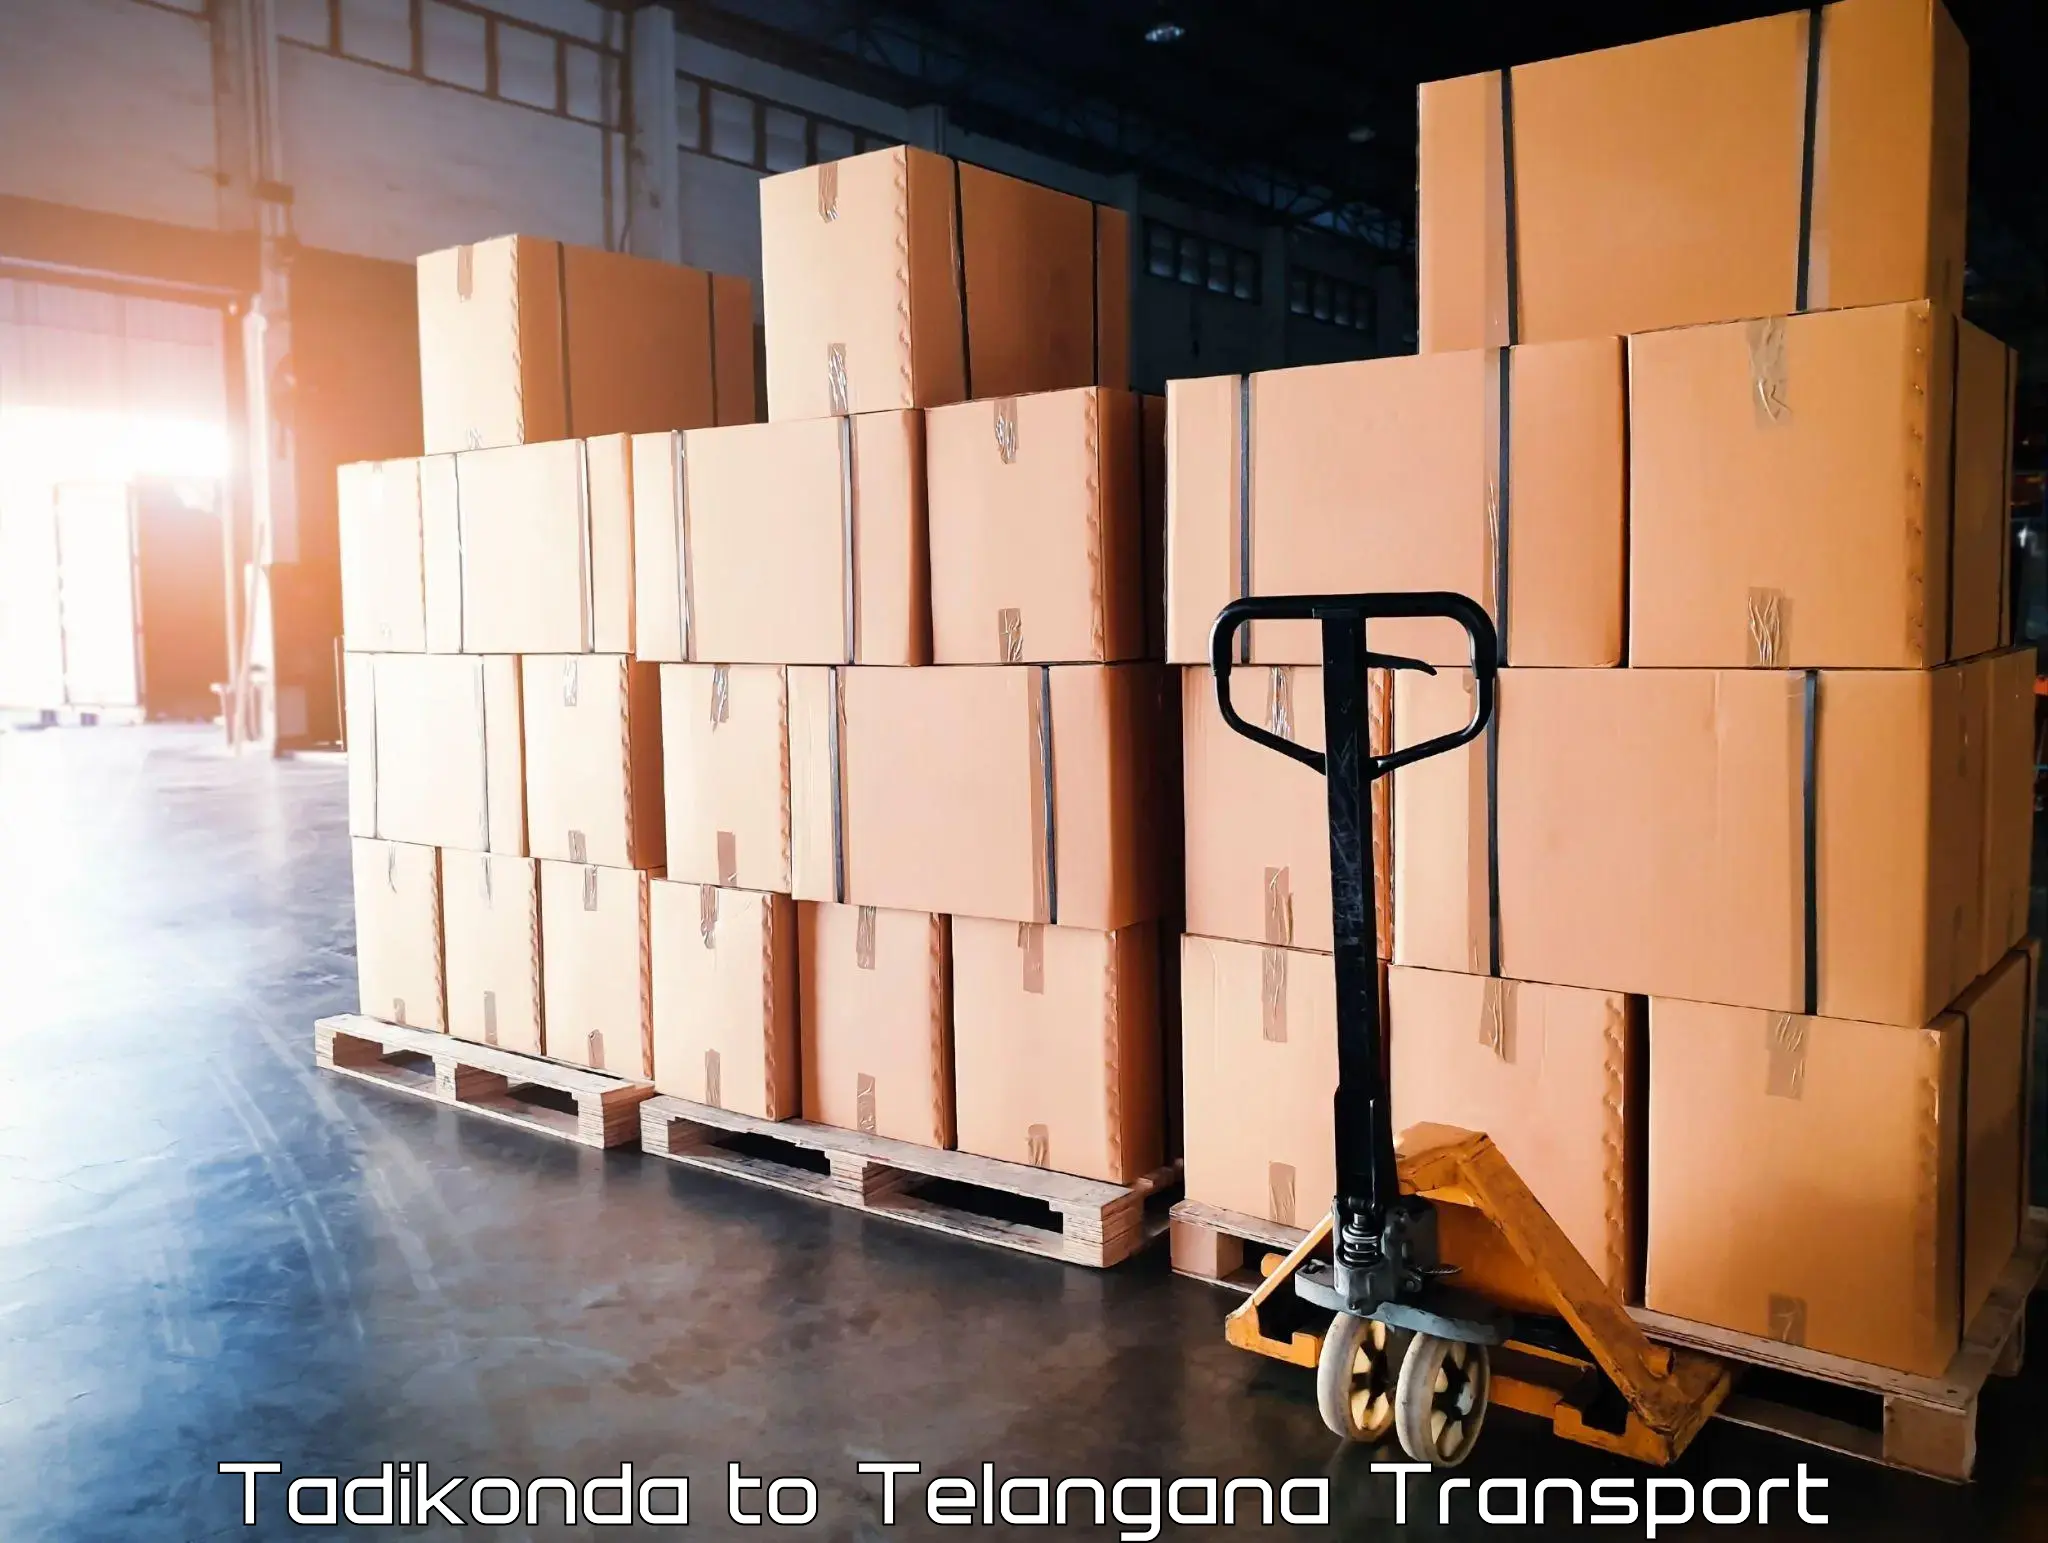 International cargo transportation services Tadikonda to Jannaram